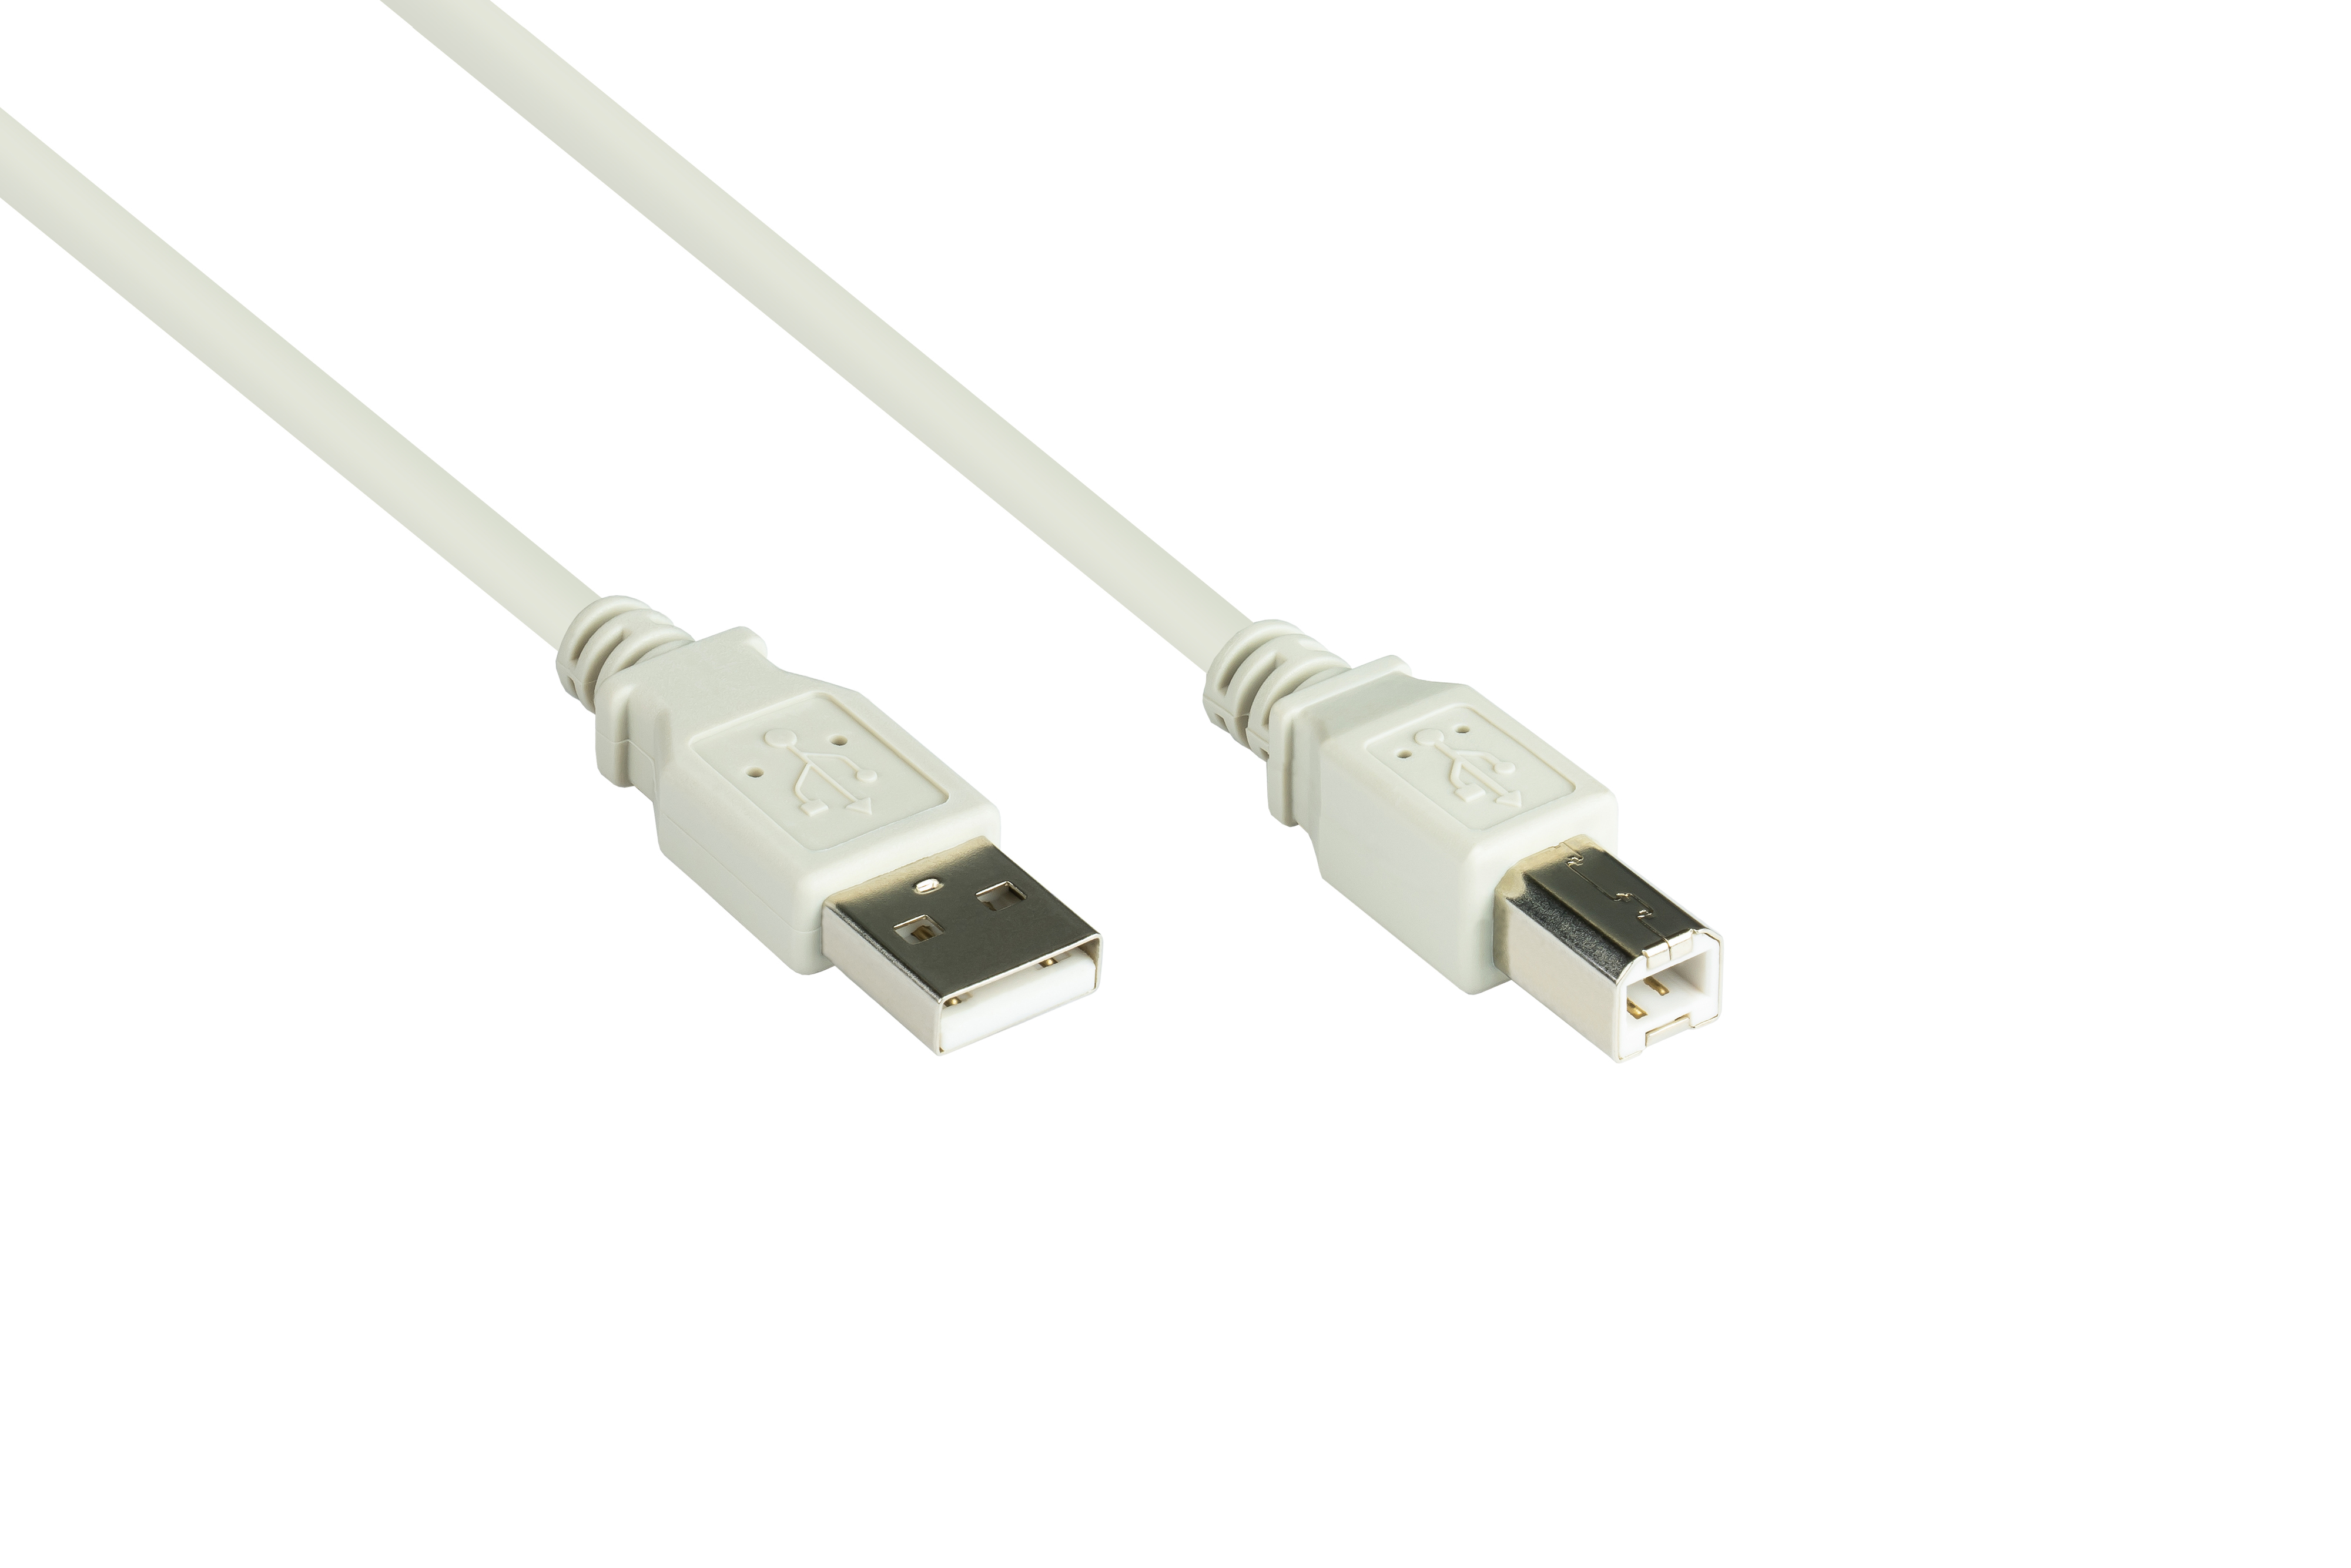 Stecker USB A 2.0 B, Anschlusskabel grau Stecker CONNECTIONS GOOD an